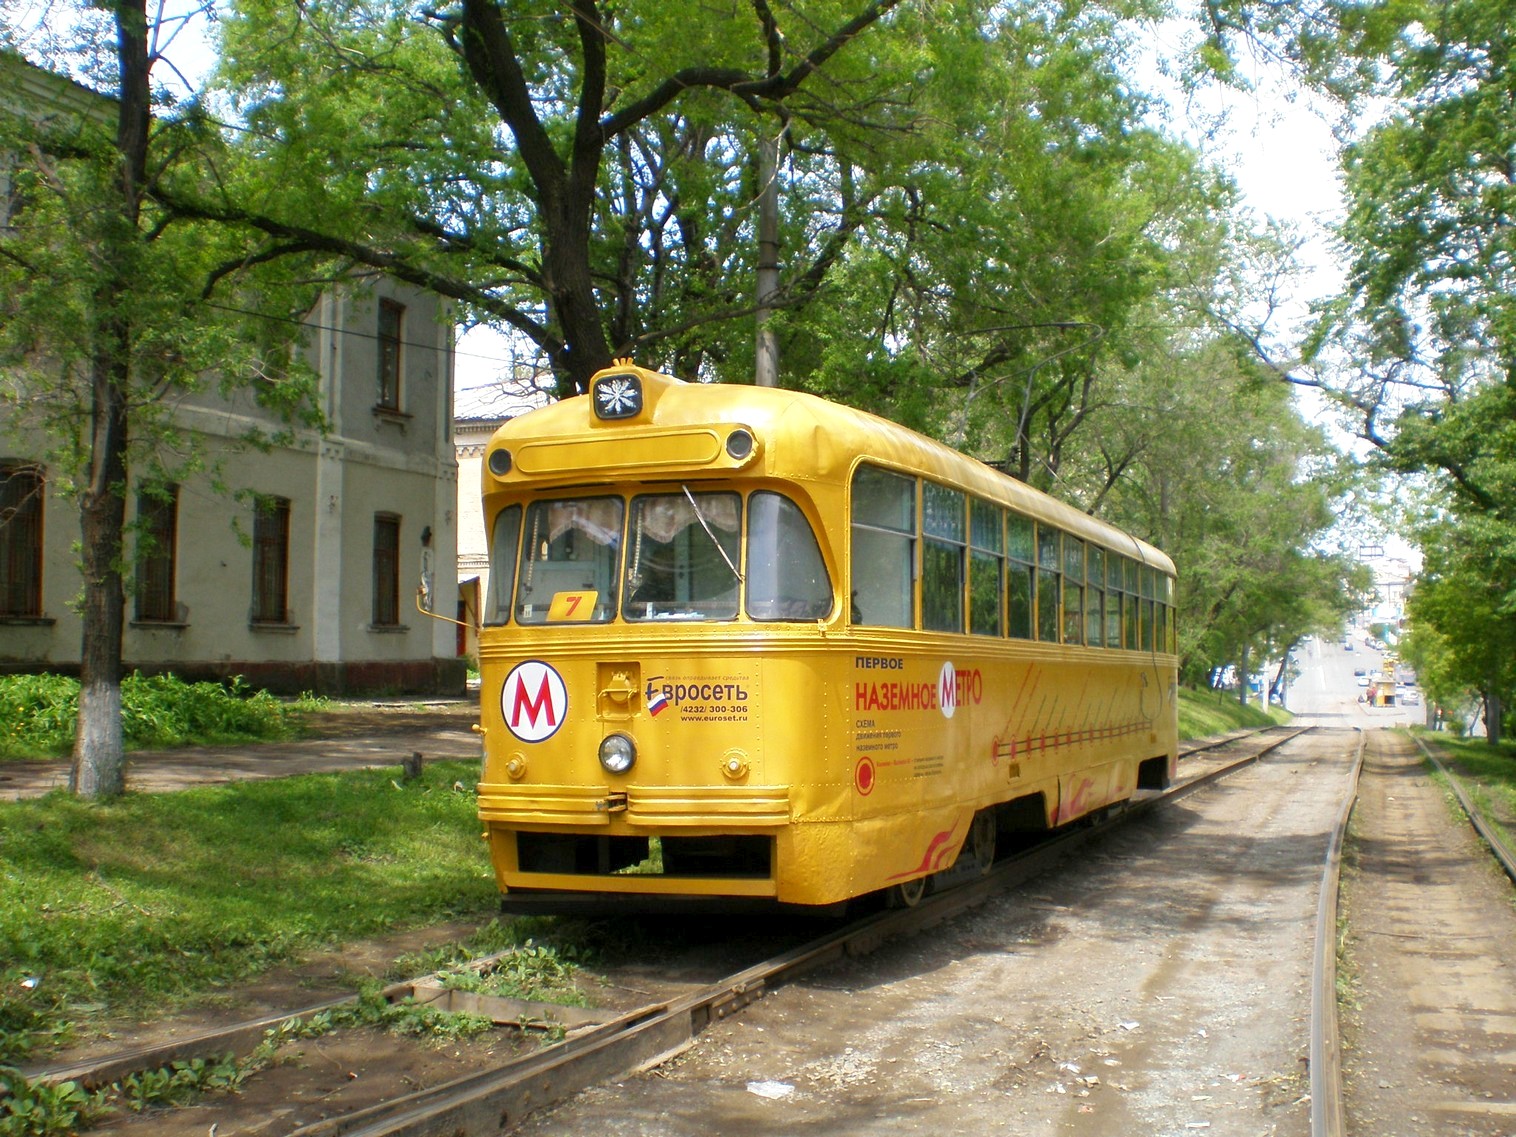 Владивостокский трамвай  —  фотографии, сделанные в 2008 году (часть 2)